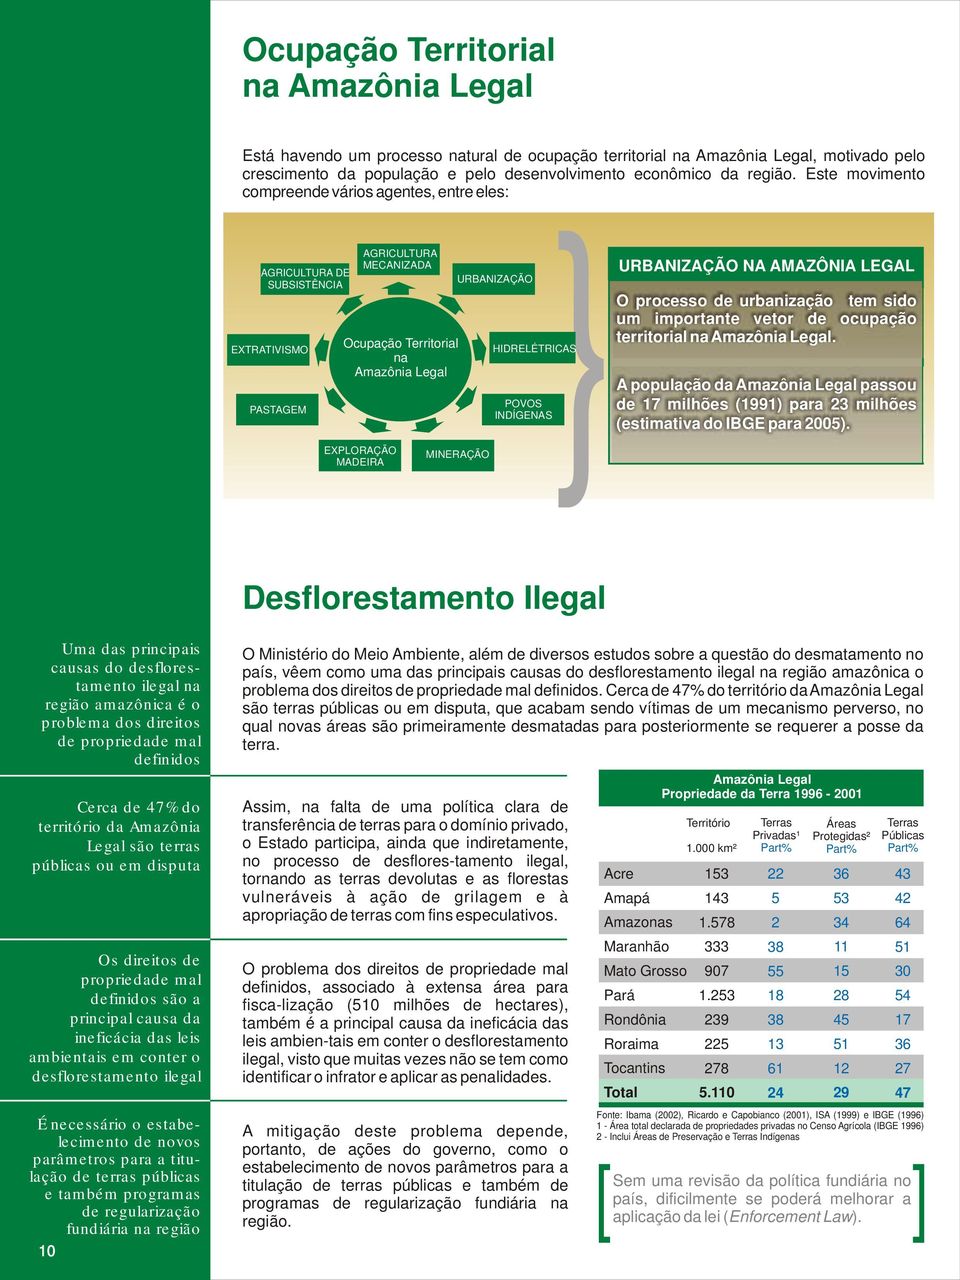 MINERAÇÃO HIDRELÉTRICAS POVOS INDÍGENAS { URBANIZAÇÃO NA AMAZÔNIA LEGAL O processo de urbanização tem sido um importante vetor de ocupação territorial na Amazônia Legal.